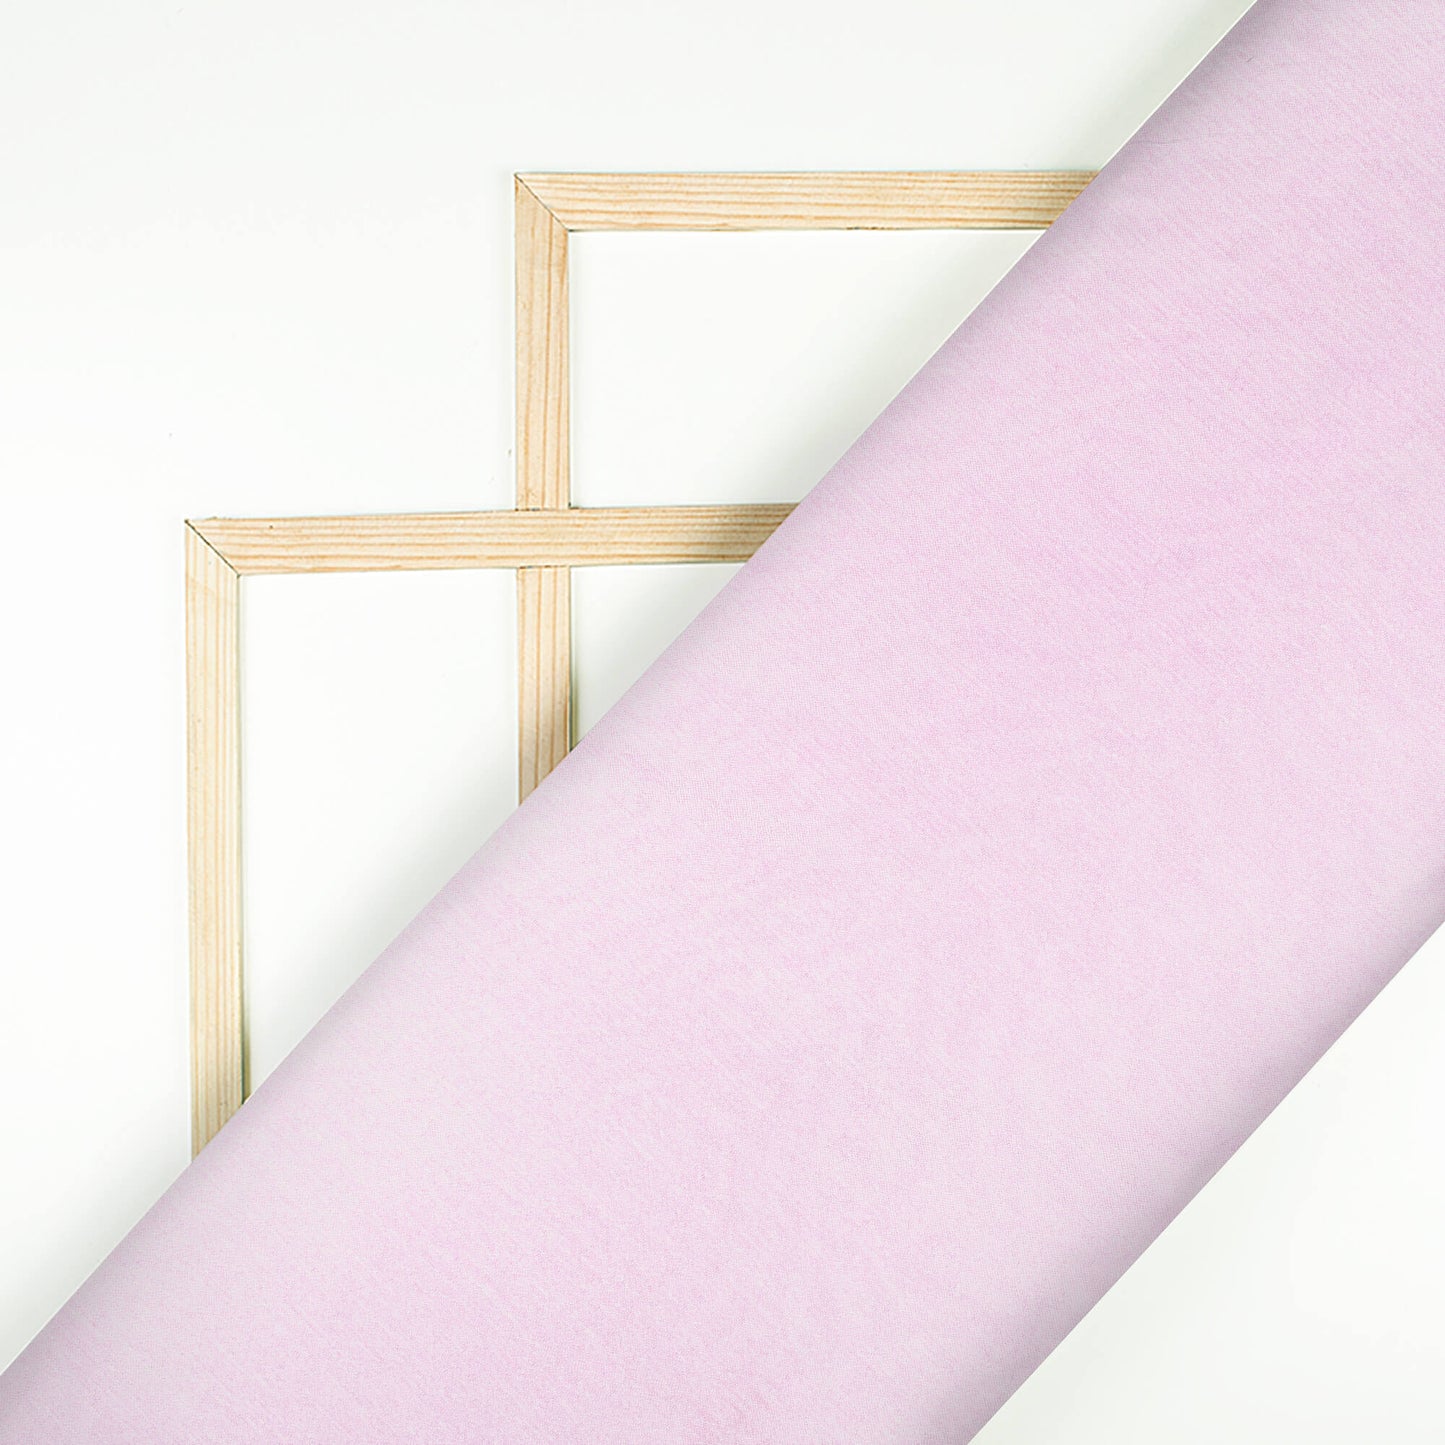 Lace Pink Plain Viscose Chinnon Chiffon Fabric